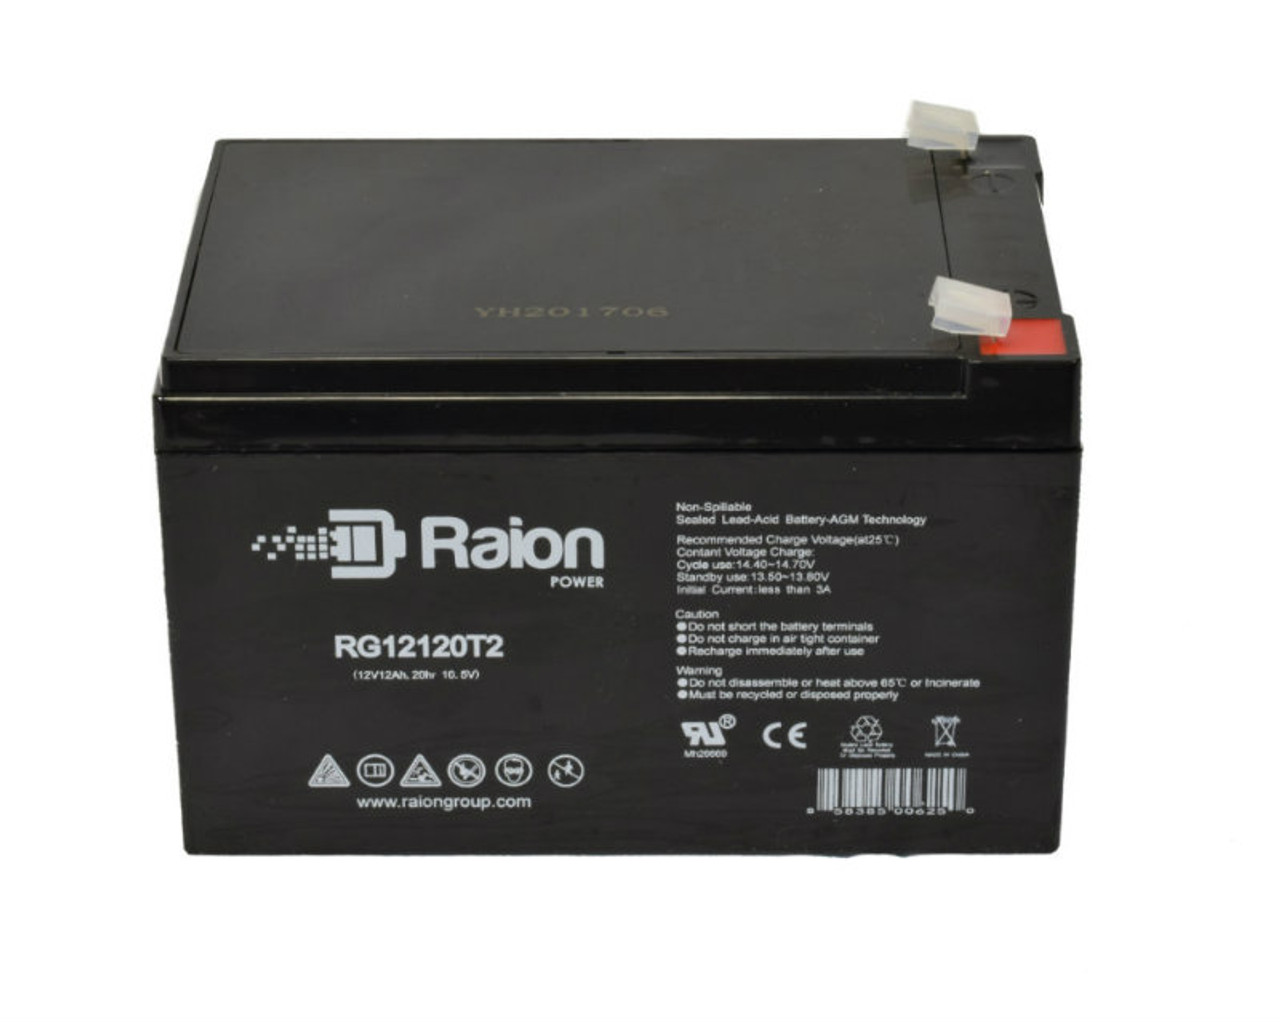 Raion Power RG12120T2 SLA Battery for Kaddy O Matic Motorcaddies 468 Caddy Bug